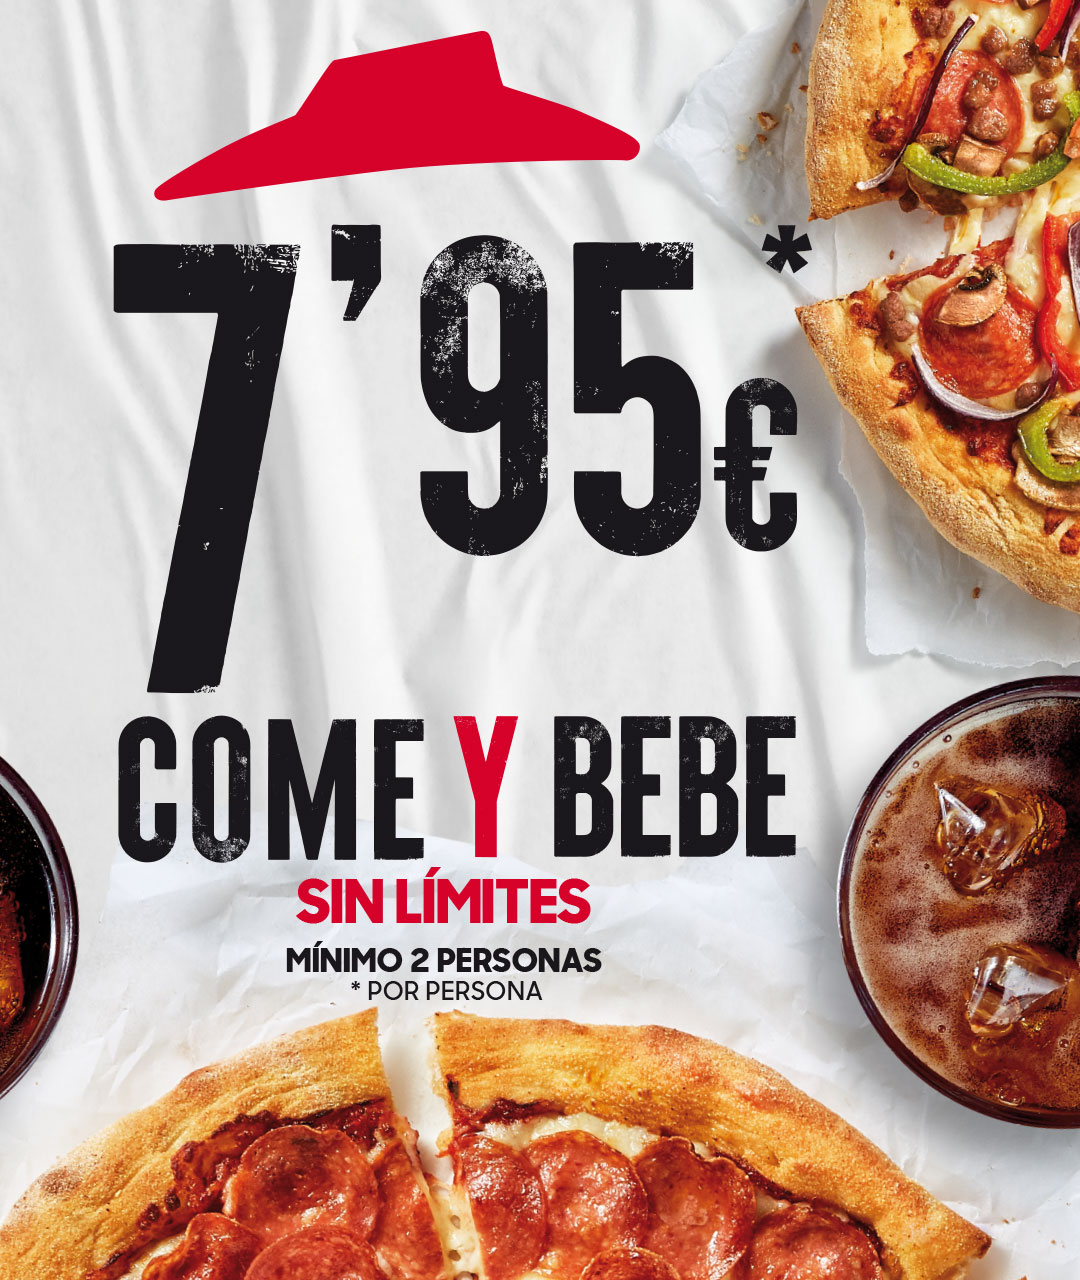 Come Y Bebe sin límites - 7,95€. Pizza Hut